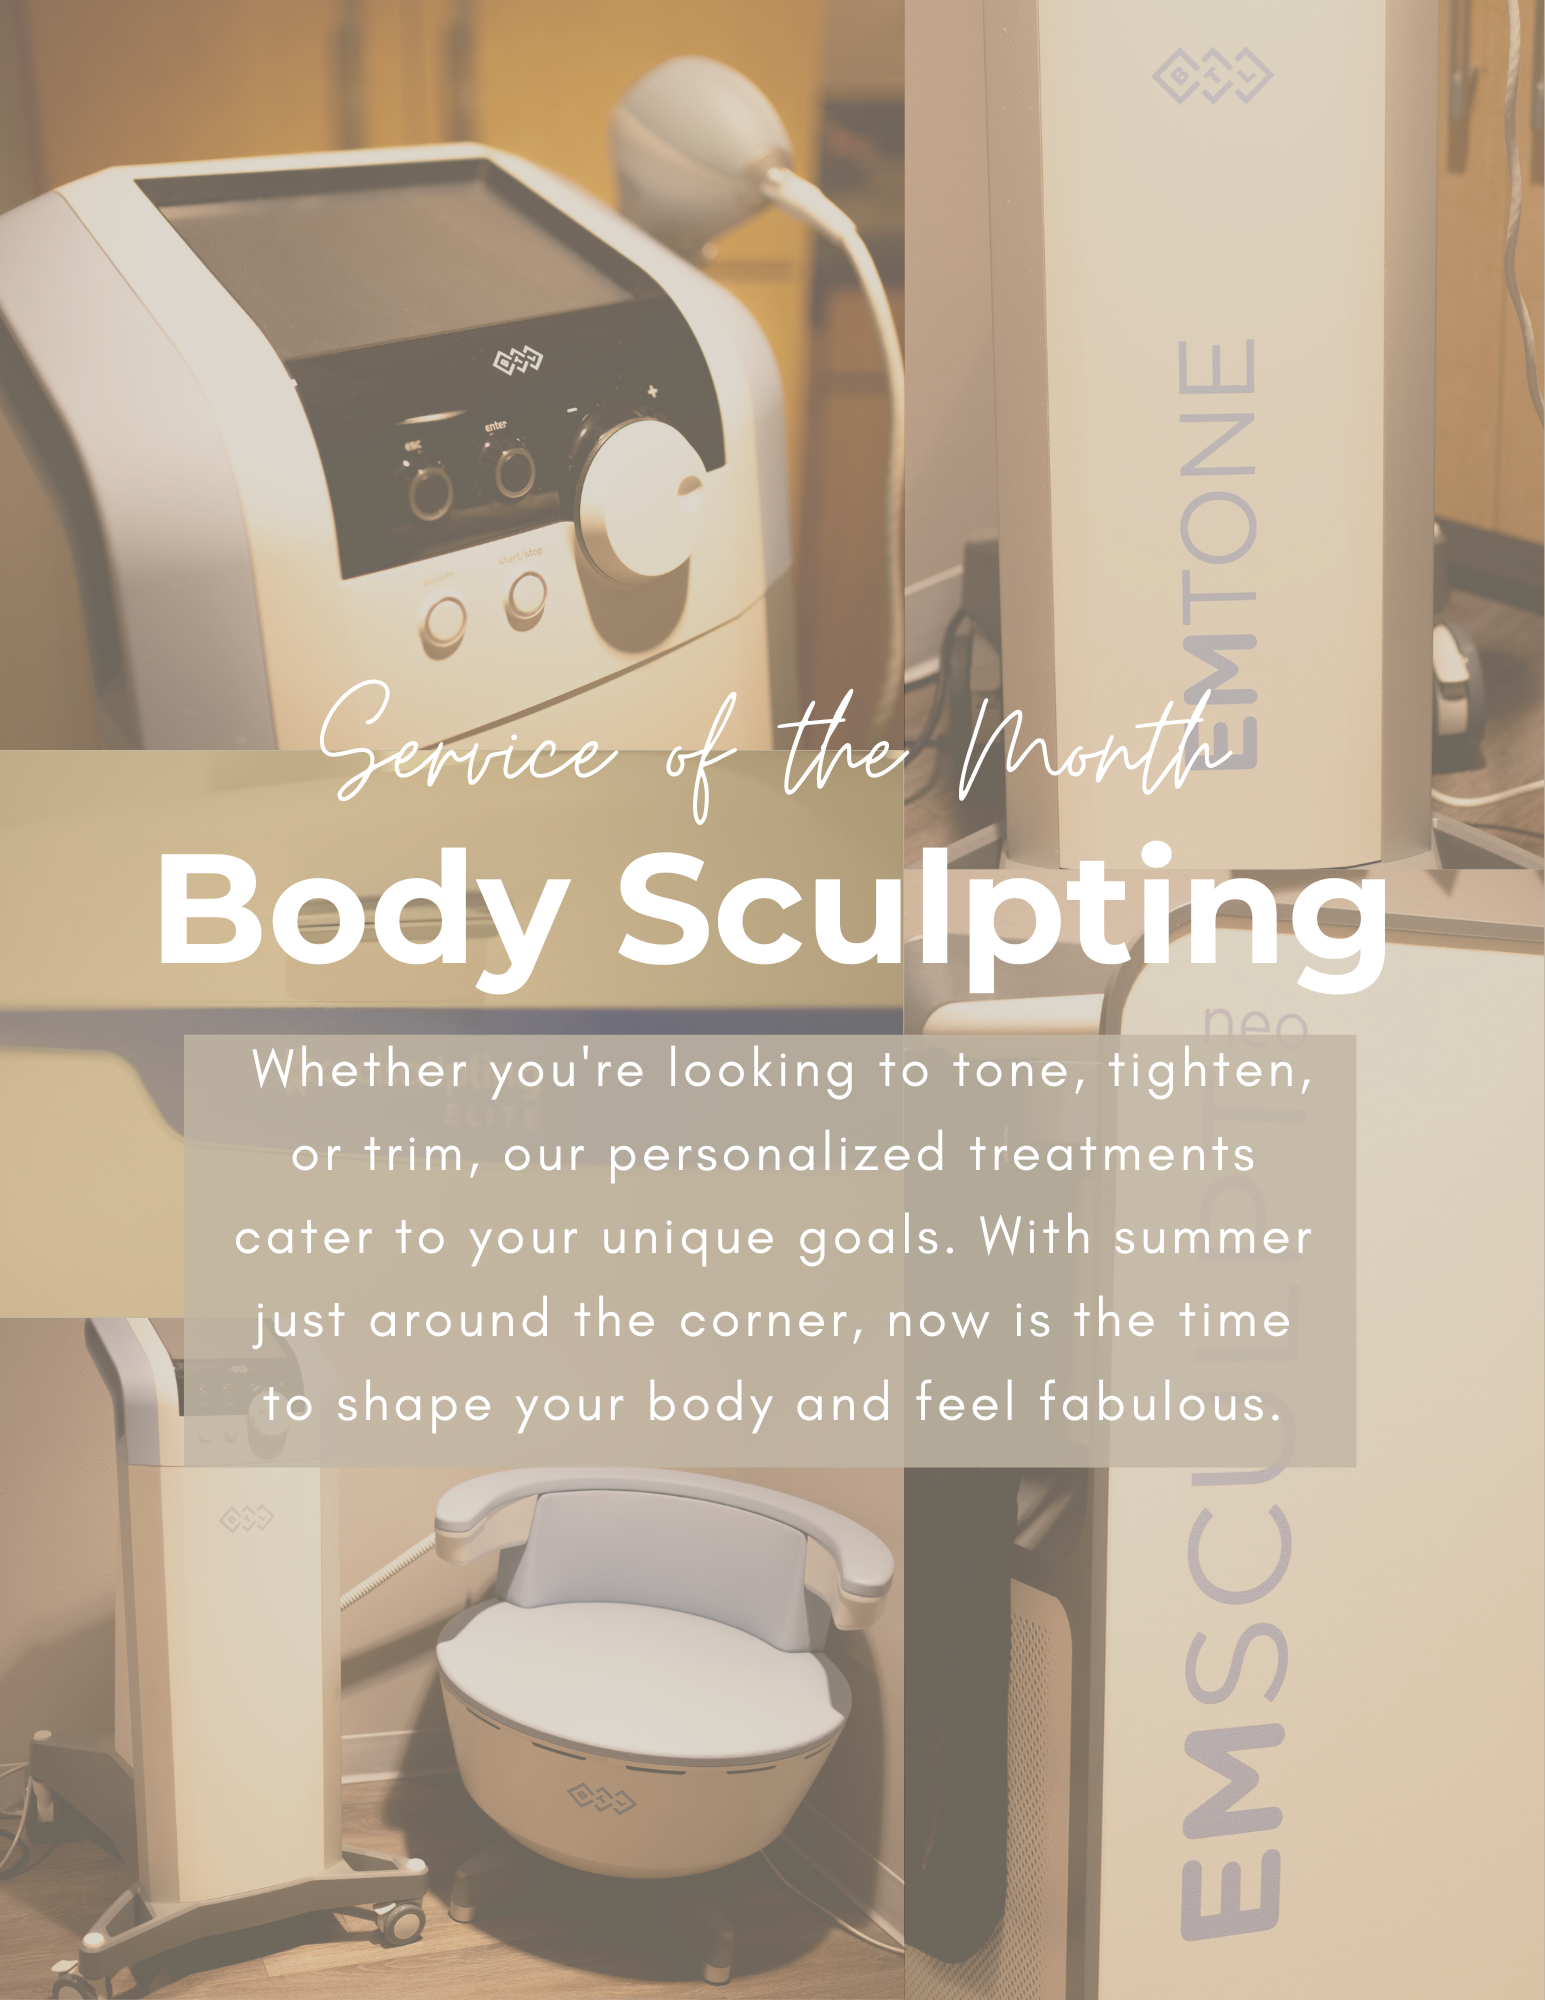 Body sculpting offer from Awaken Medical Aesthetics